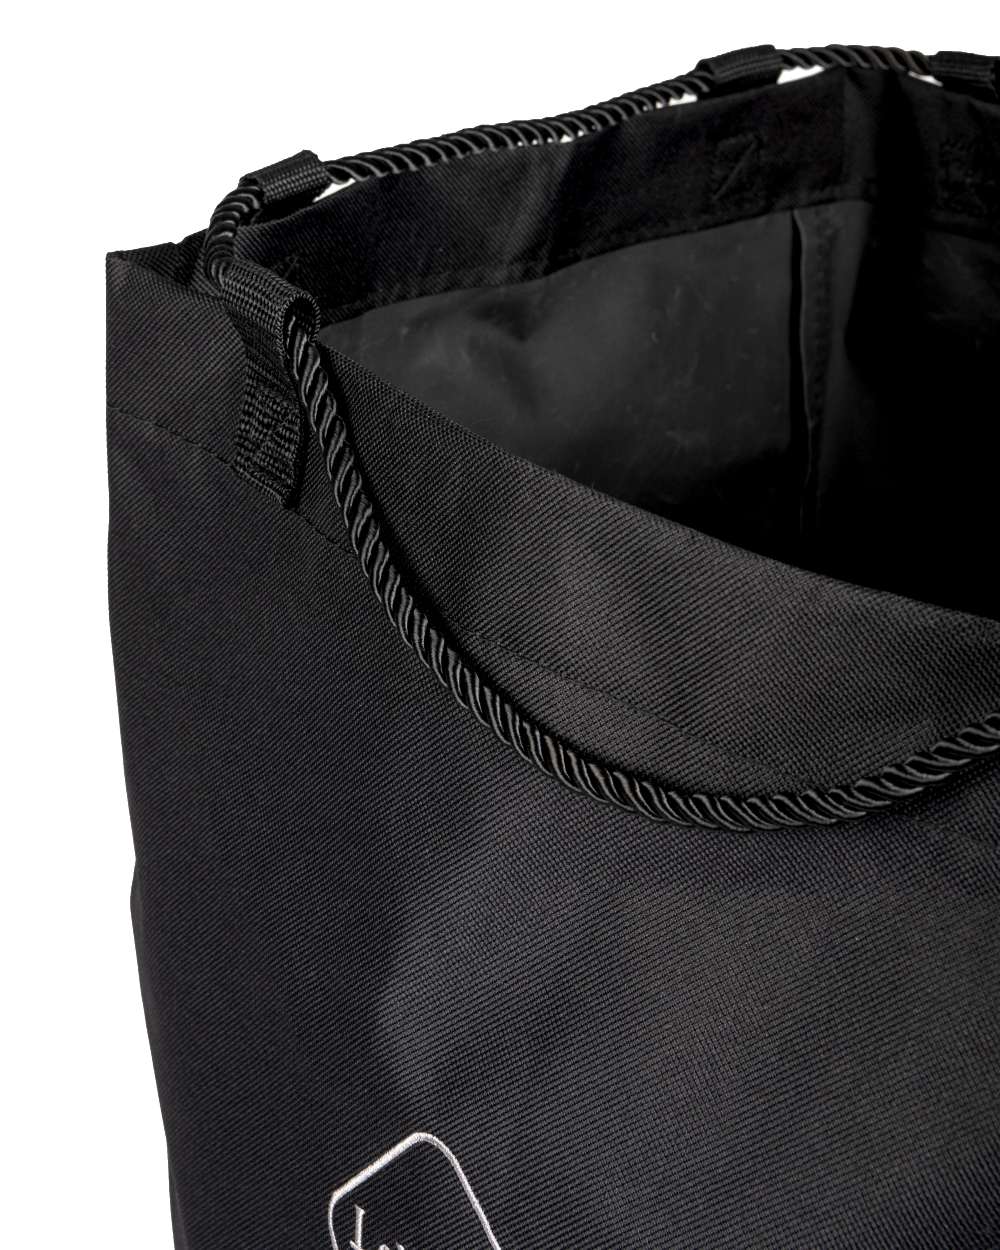 Black coloured LeMieux Hay Tidy Bag on white background 